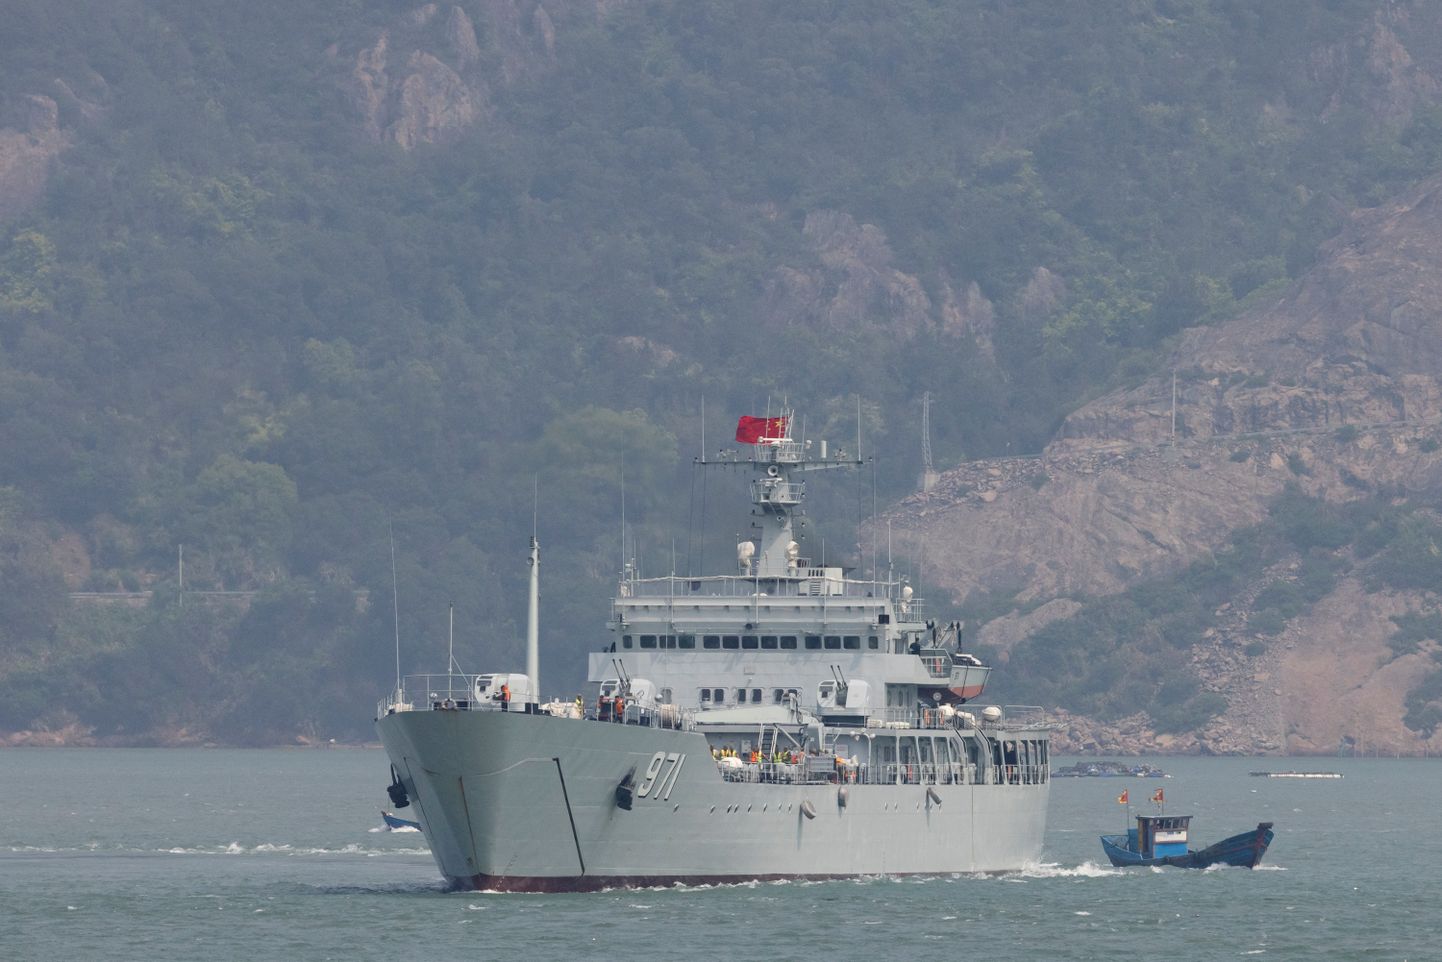 Hiina sõjalaev õppusel Taiwani kontrolli all olevate Matsu saarte lähistel. Foto on illustratiivne.